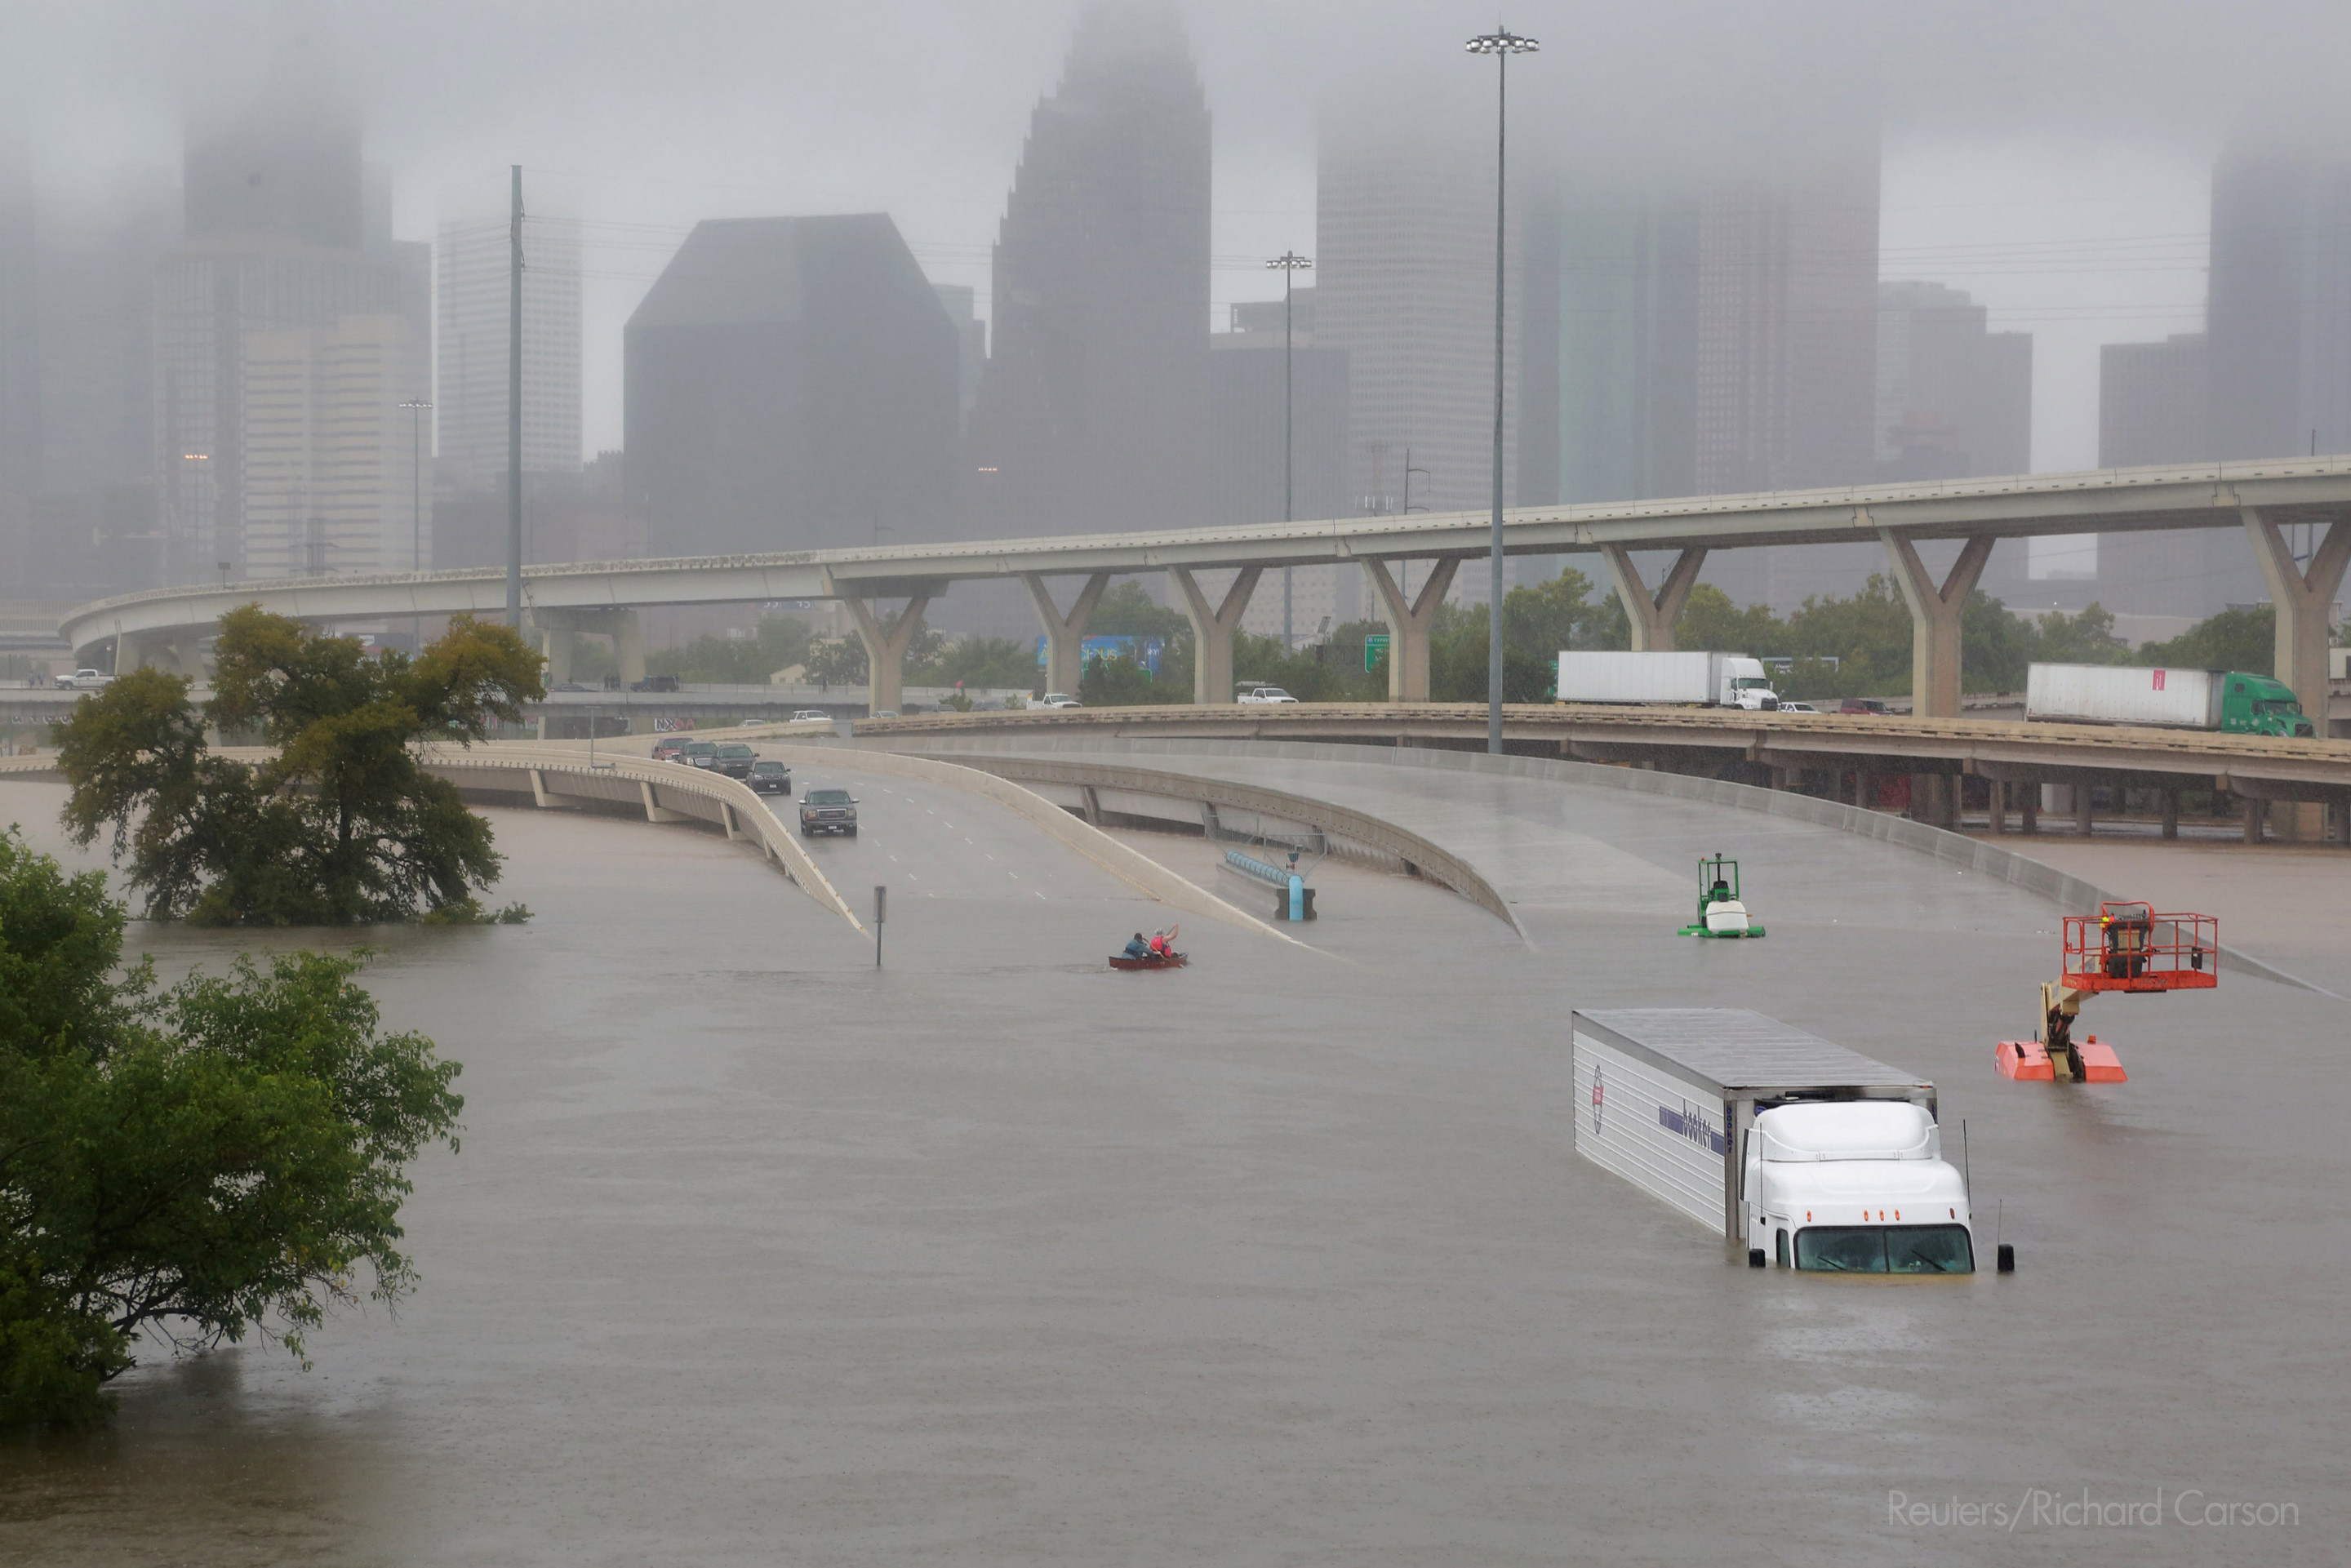 In September 2017 Hurricane Harvey caused severe flooding in Houston, US